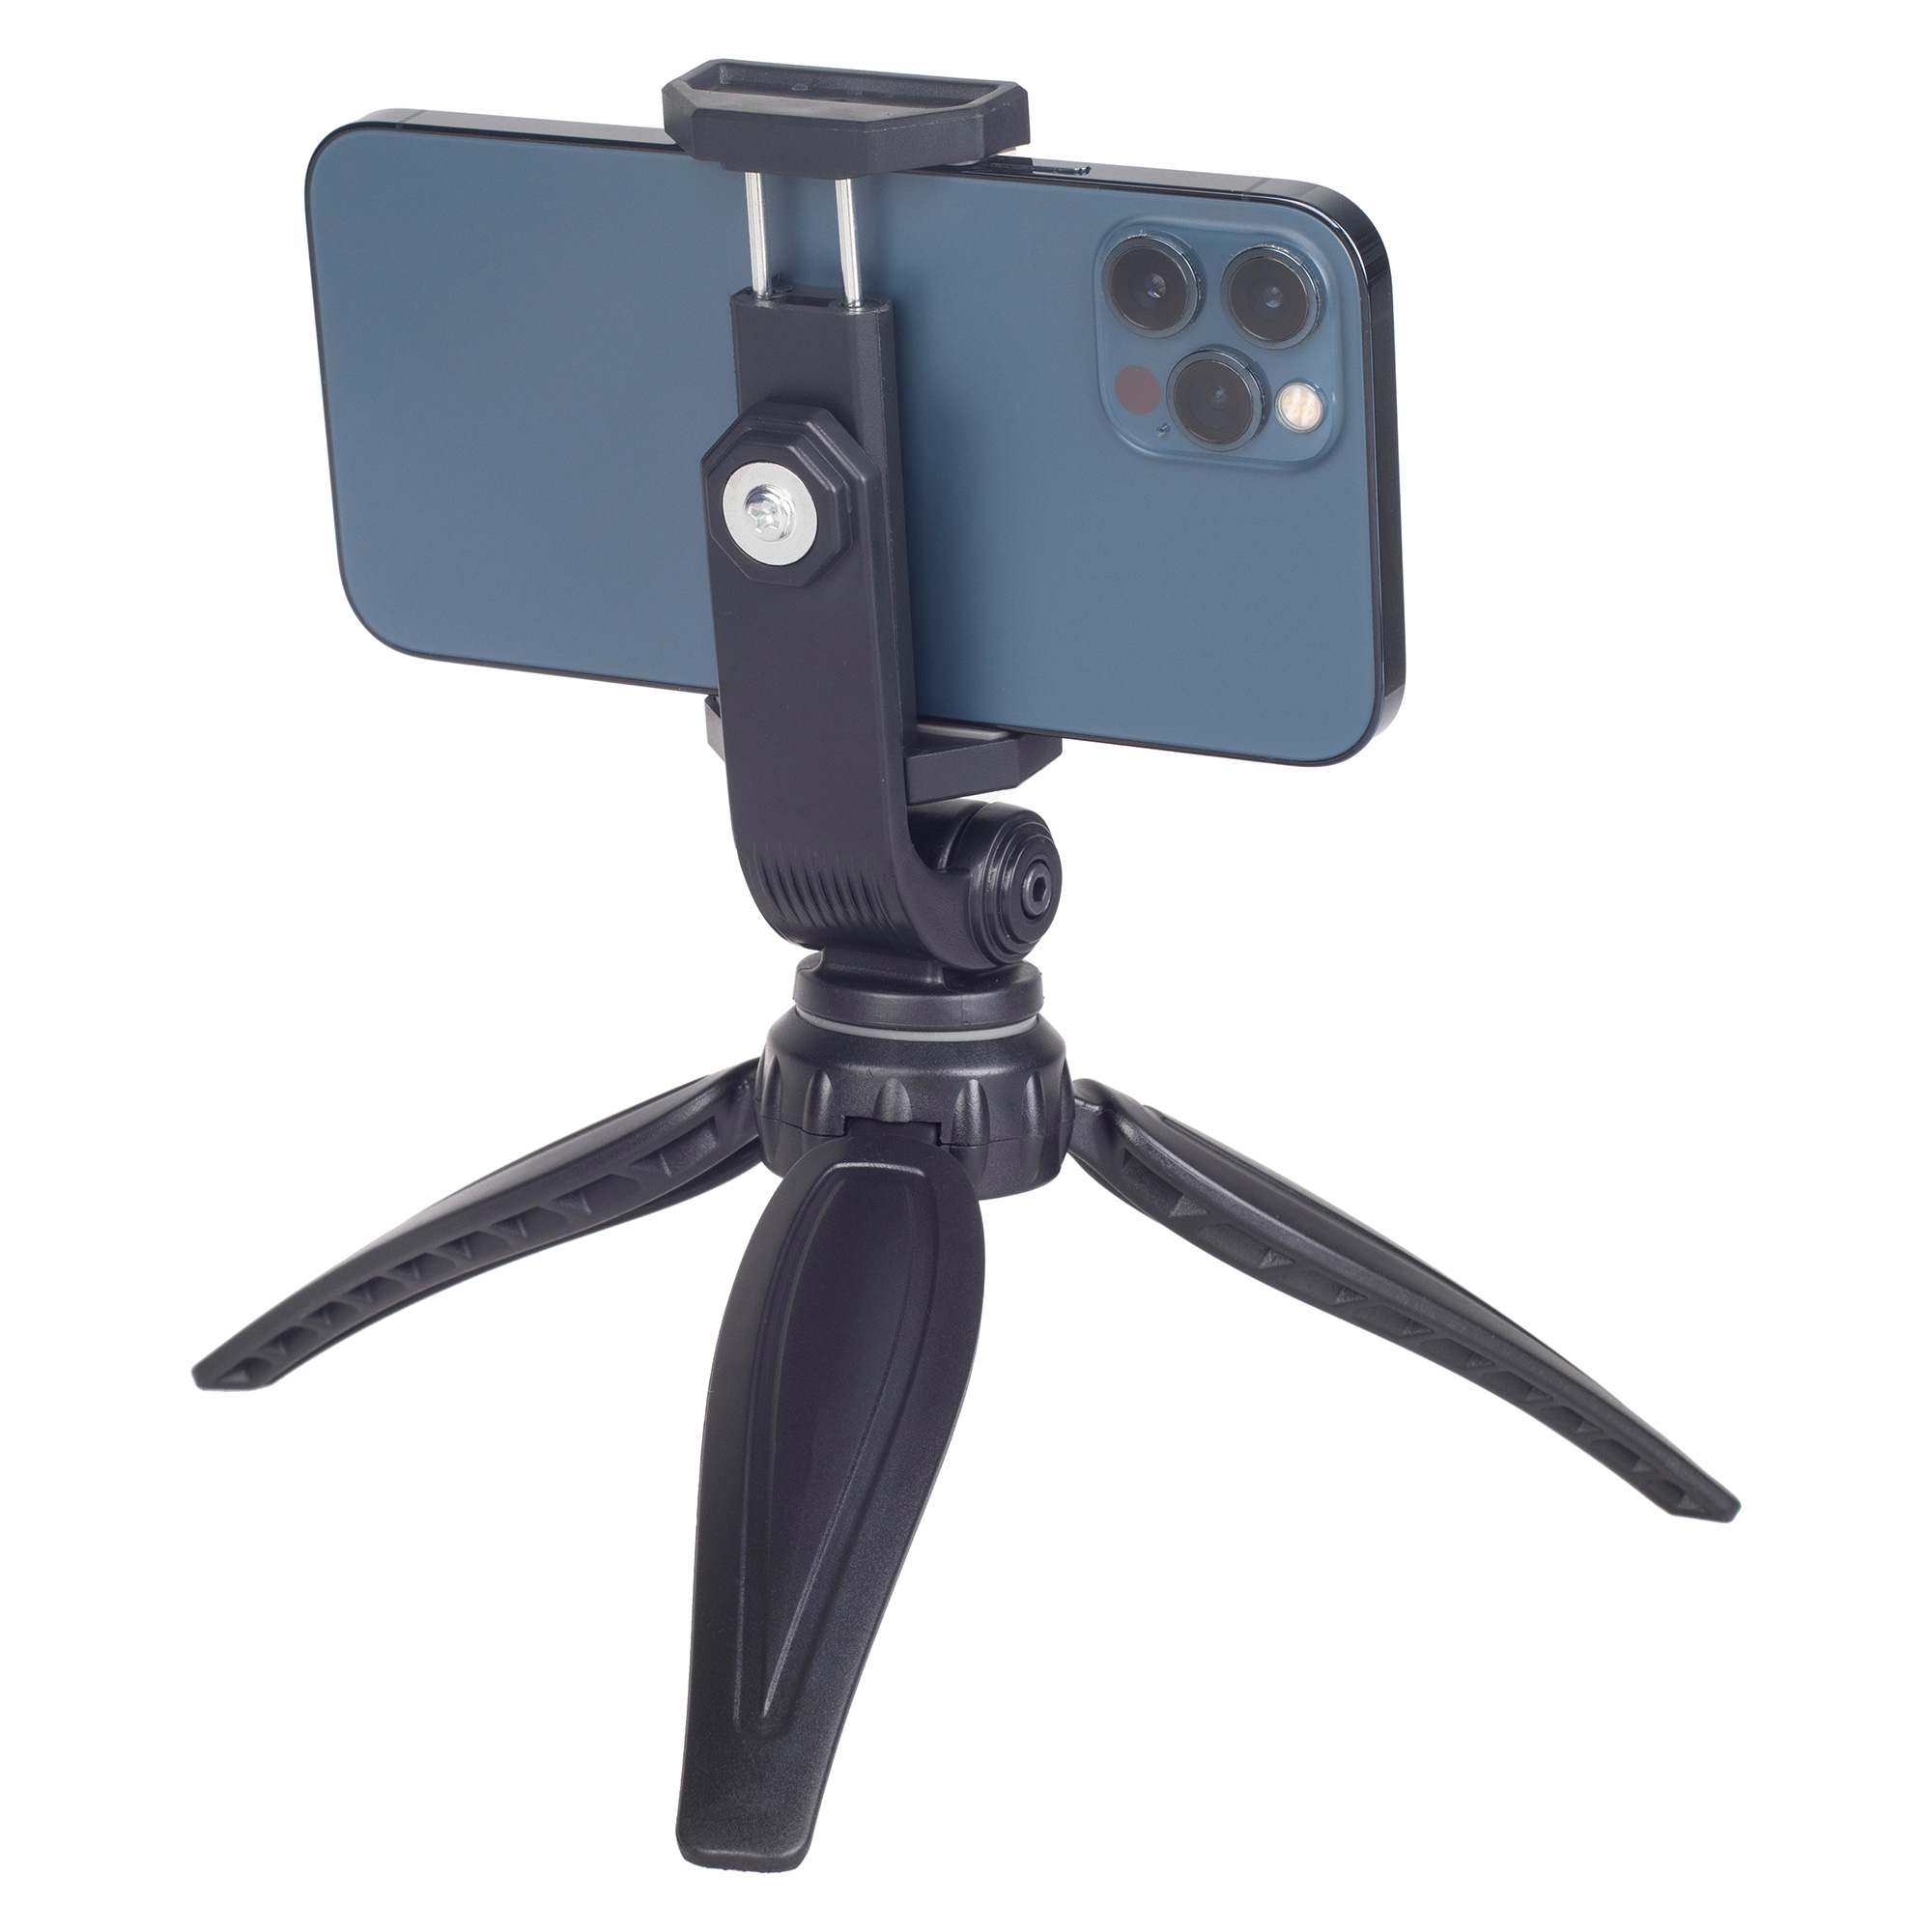 ayex kompaktes Mini-Tripod mit beweglicher Smartphonehalterung Flexibel Robust für Smartphones bis 7 Zoll Perfekt für verwacklungsfreie Aufnahmen